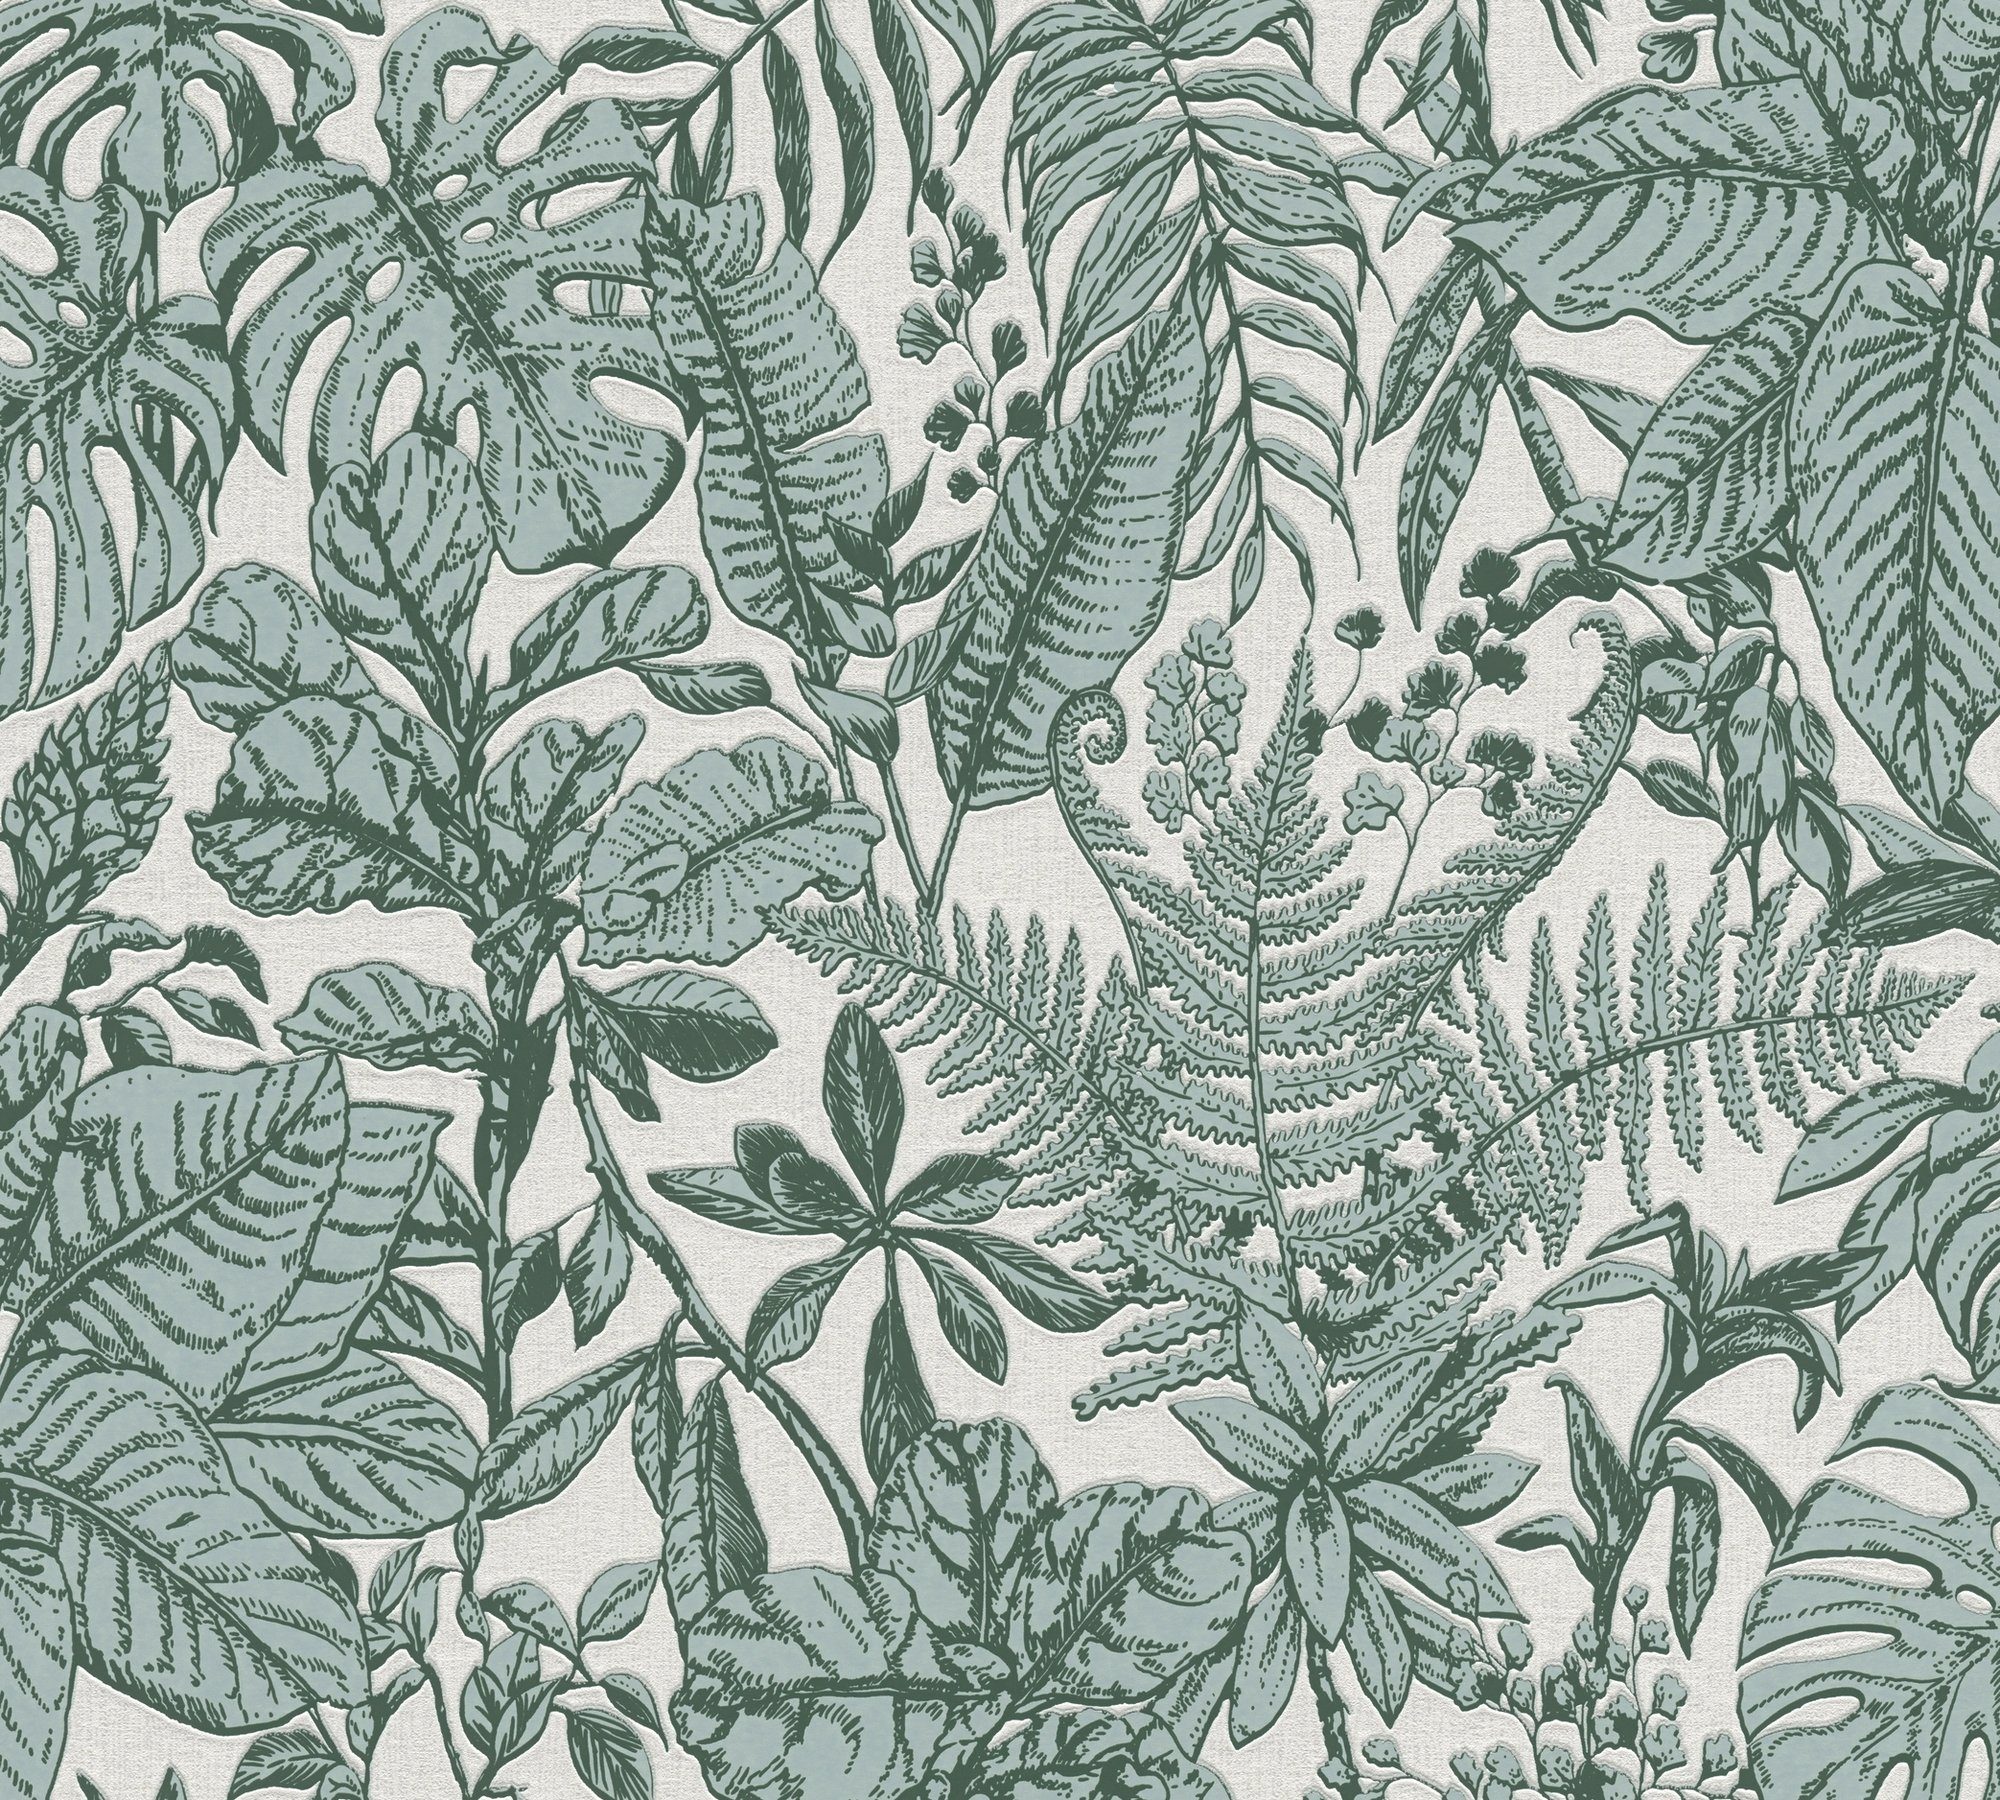 Designertapete weiß/grau/tannengrün tropisch, Daniel Hechter Dschungel Création Vliestapete A.S. botanisch, Tapete Dschungel,